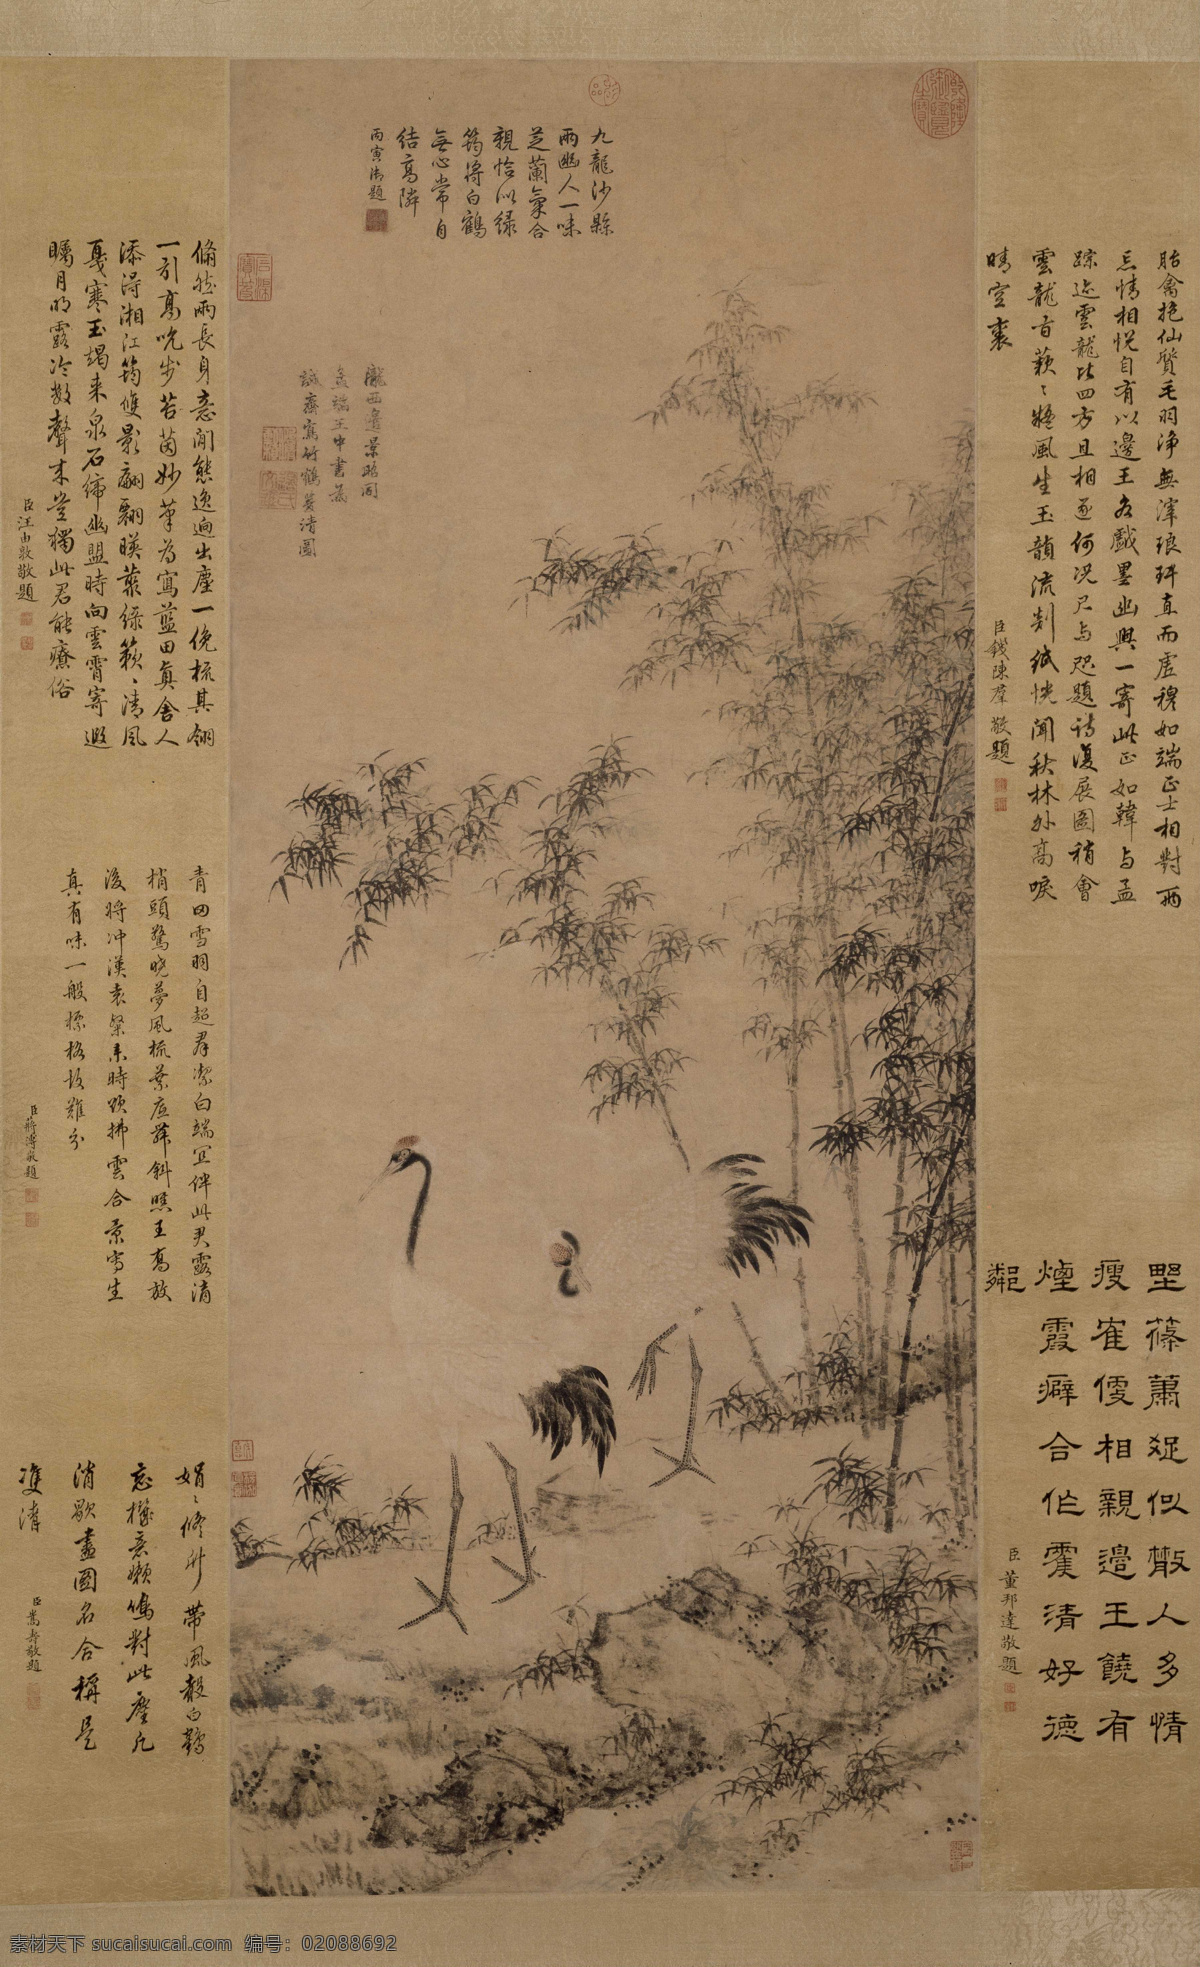 明 边景昭 王绂 竹鹤双清图轴 国画 古代 文化艺术 绘画书法